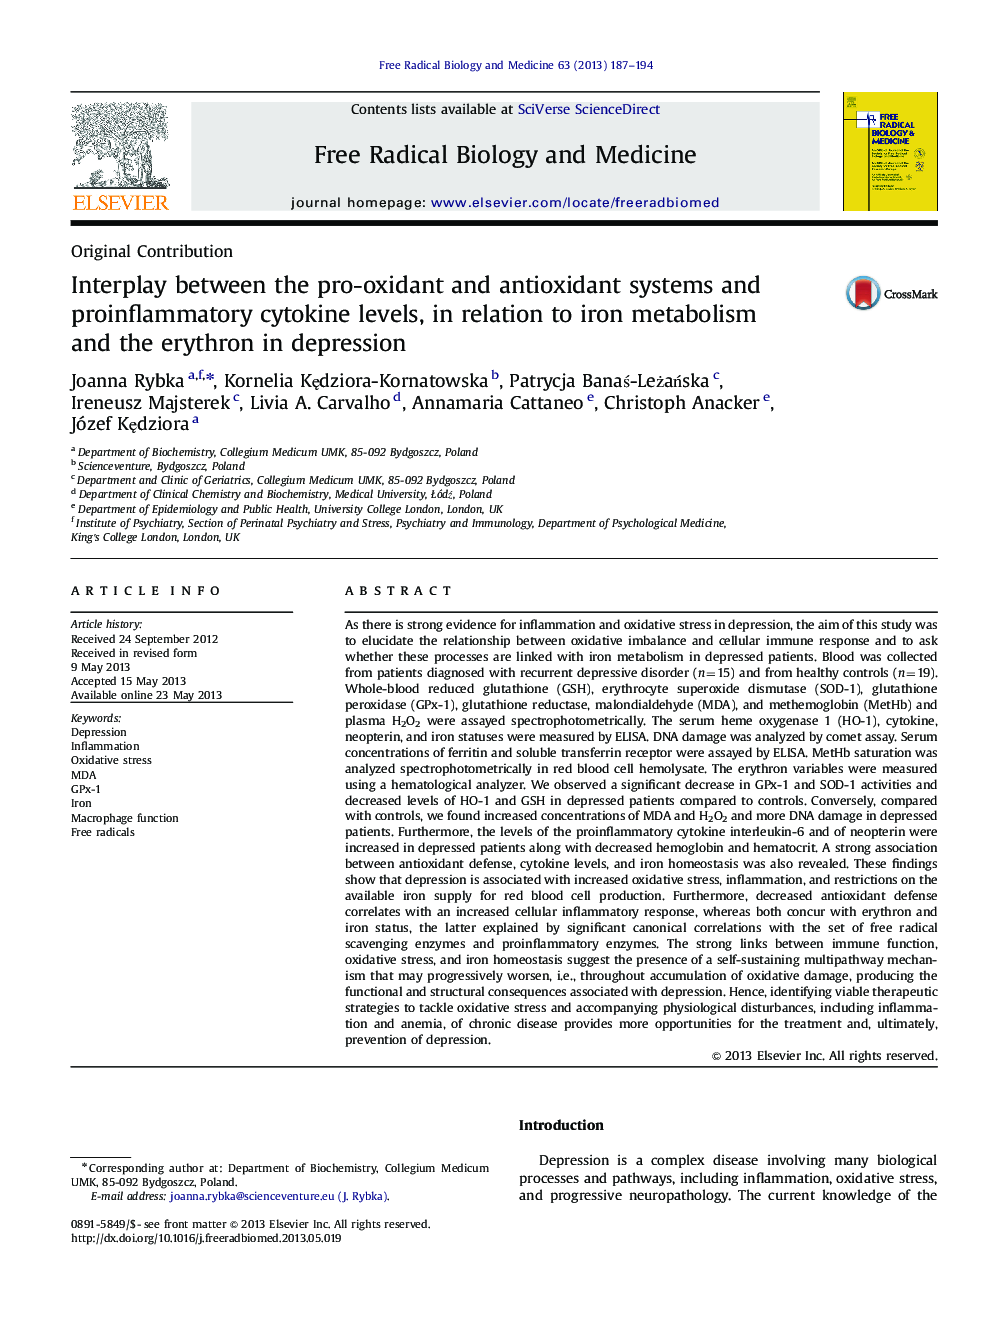 تعامل بین سیستم های پروتئین اکسیدان و آنتی اکسیدان و سطوح سیتوکین ضد التهابی در ارتباط با متابولیسم آهن و اریترون در افسردگی 